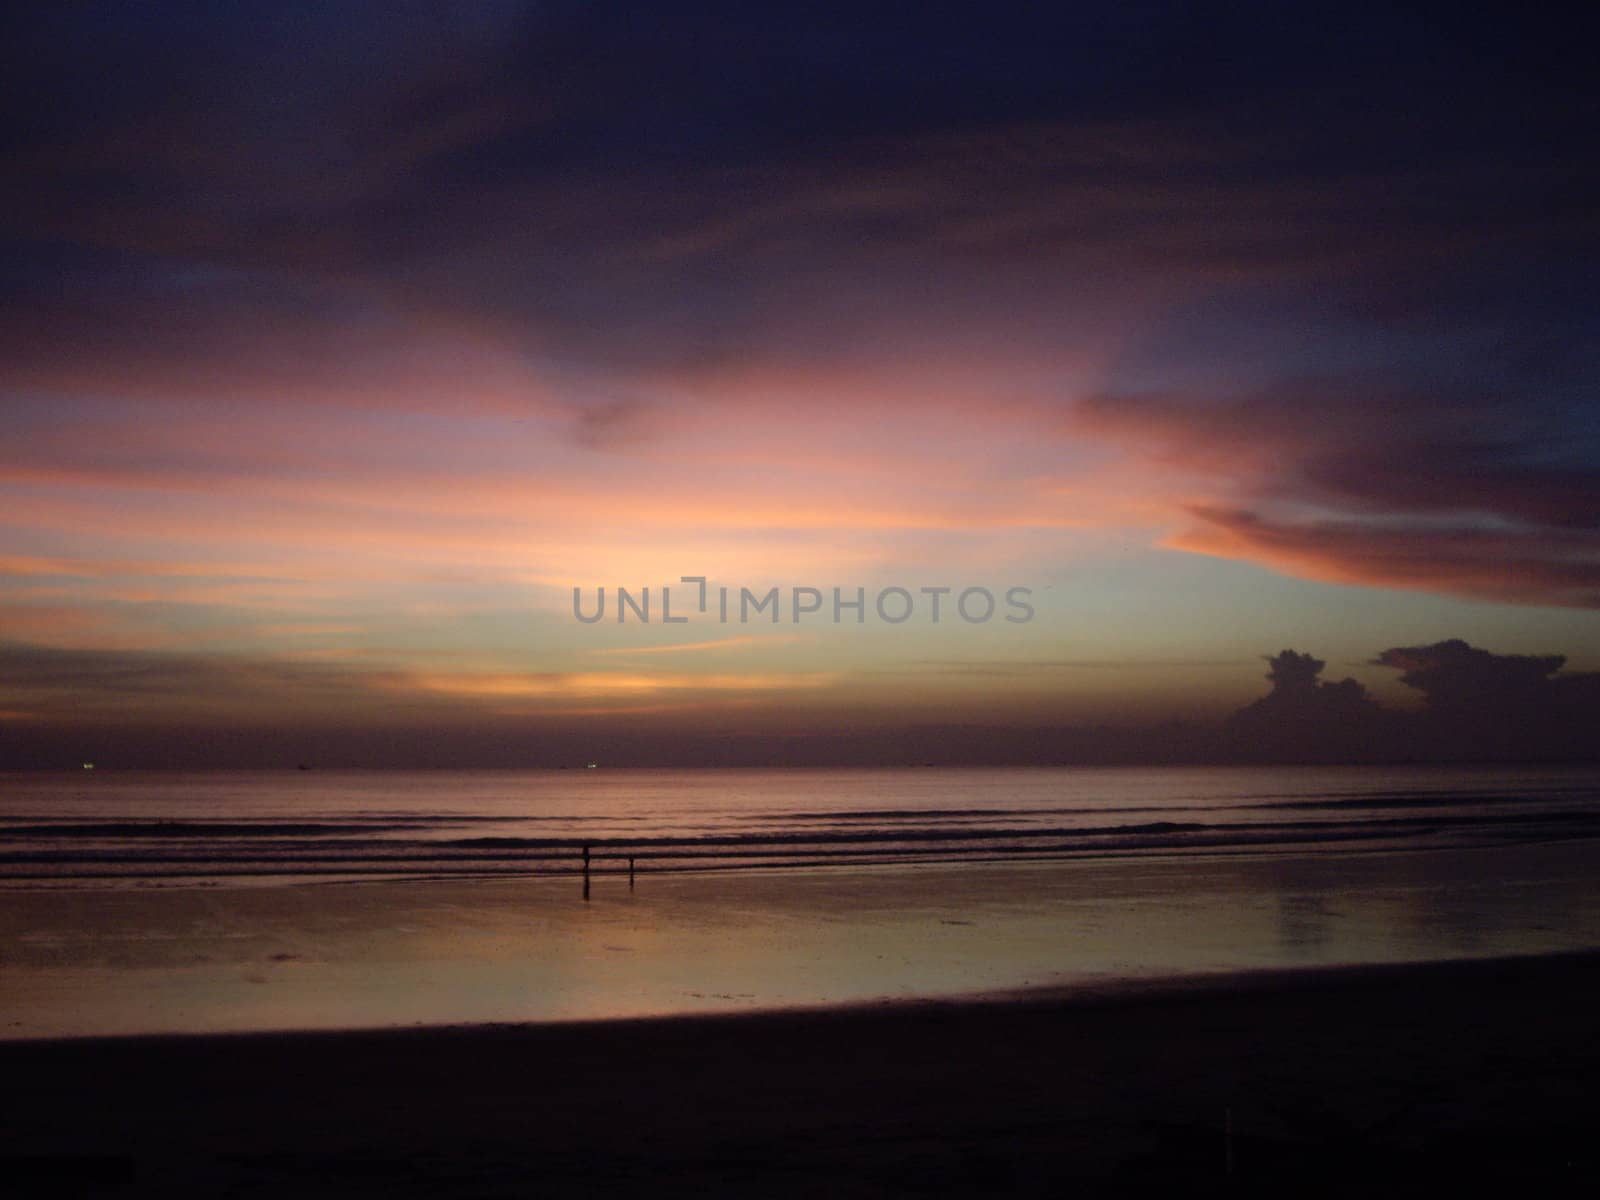 Sunset on a tropical beach